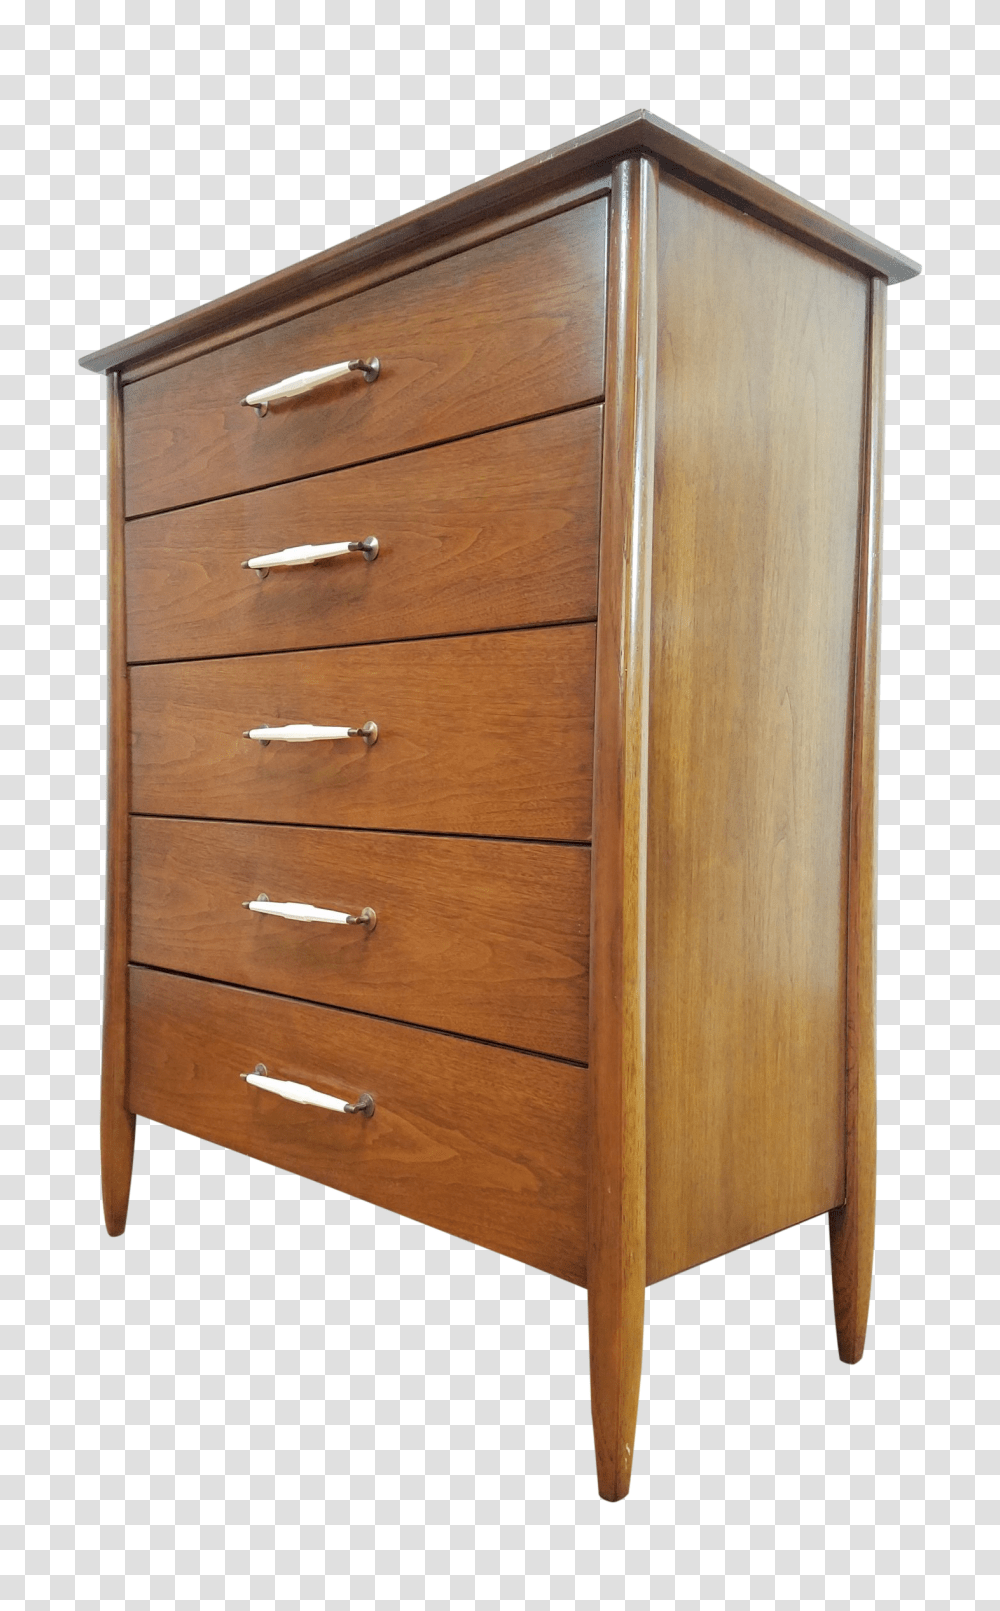 Dresser, Furniture, Cabinet, Drawer, Wood Transparent Png